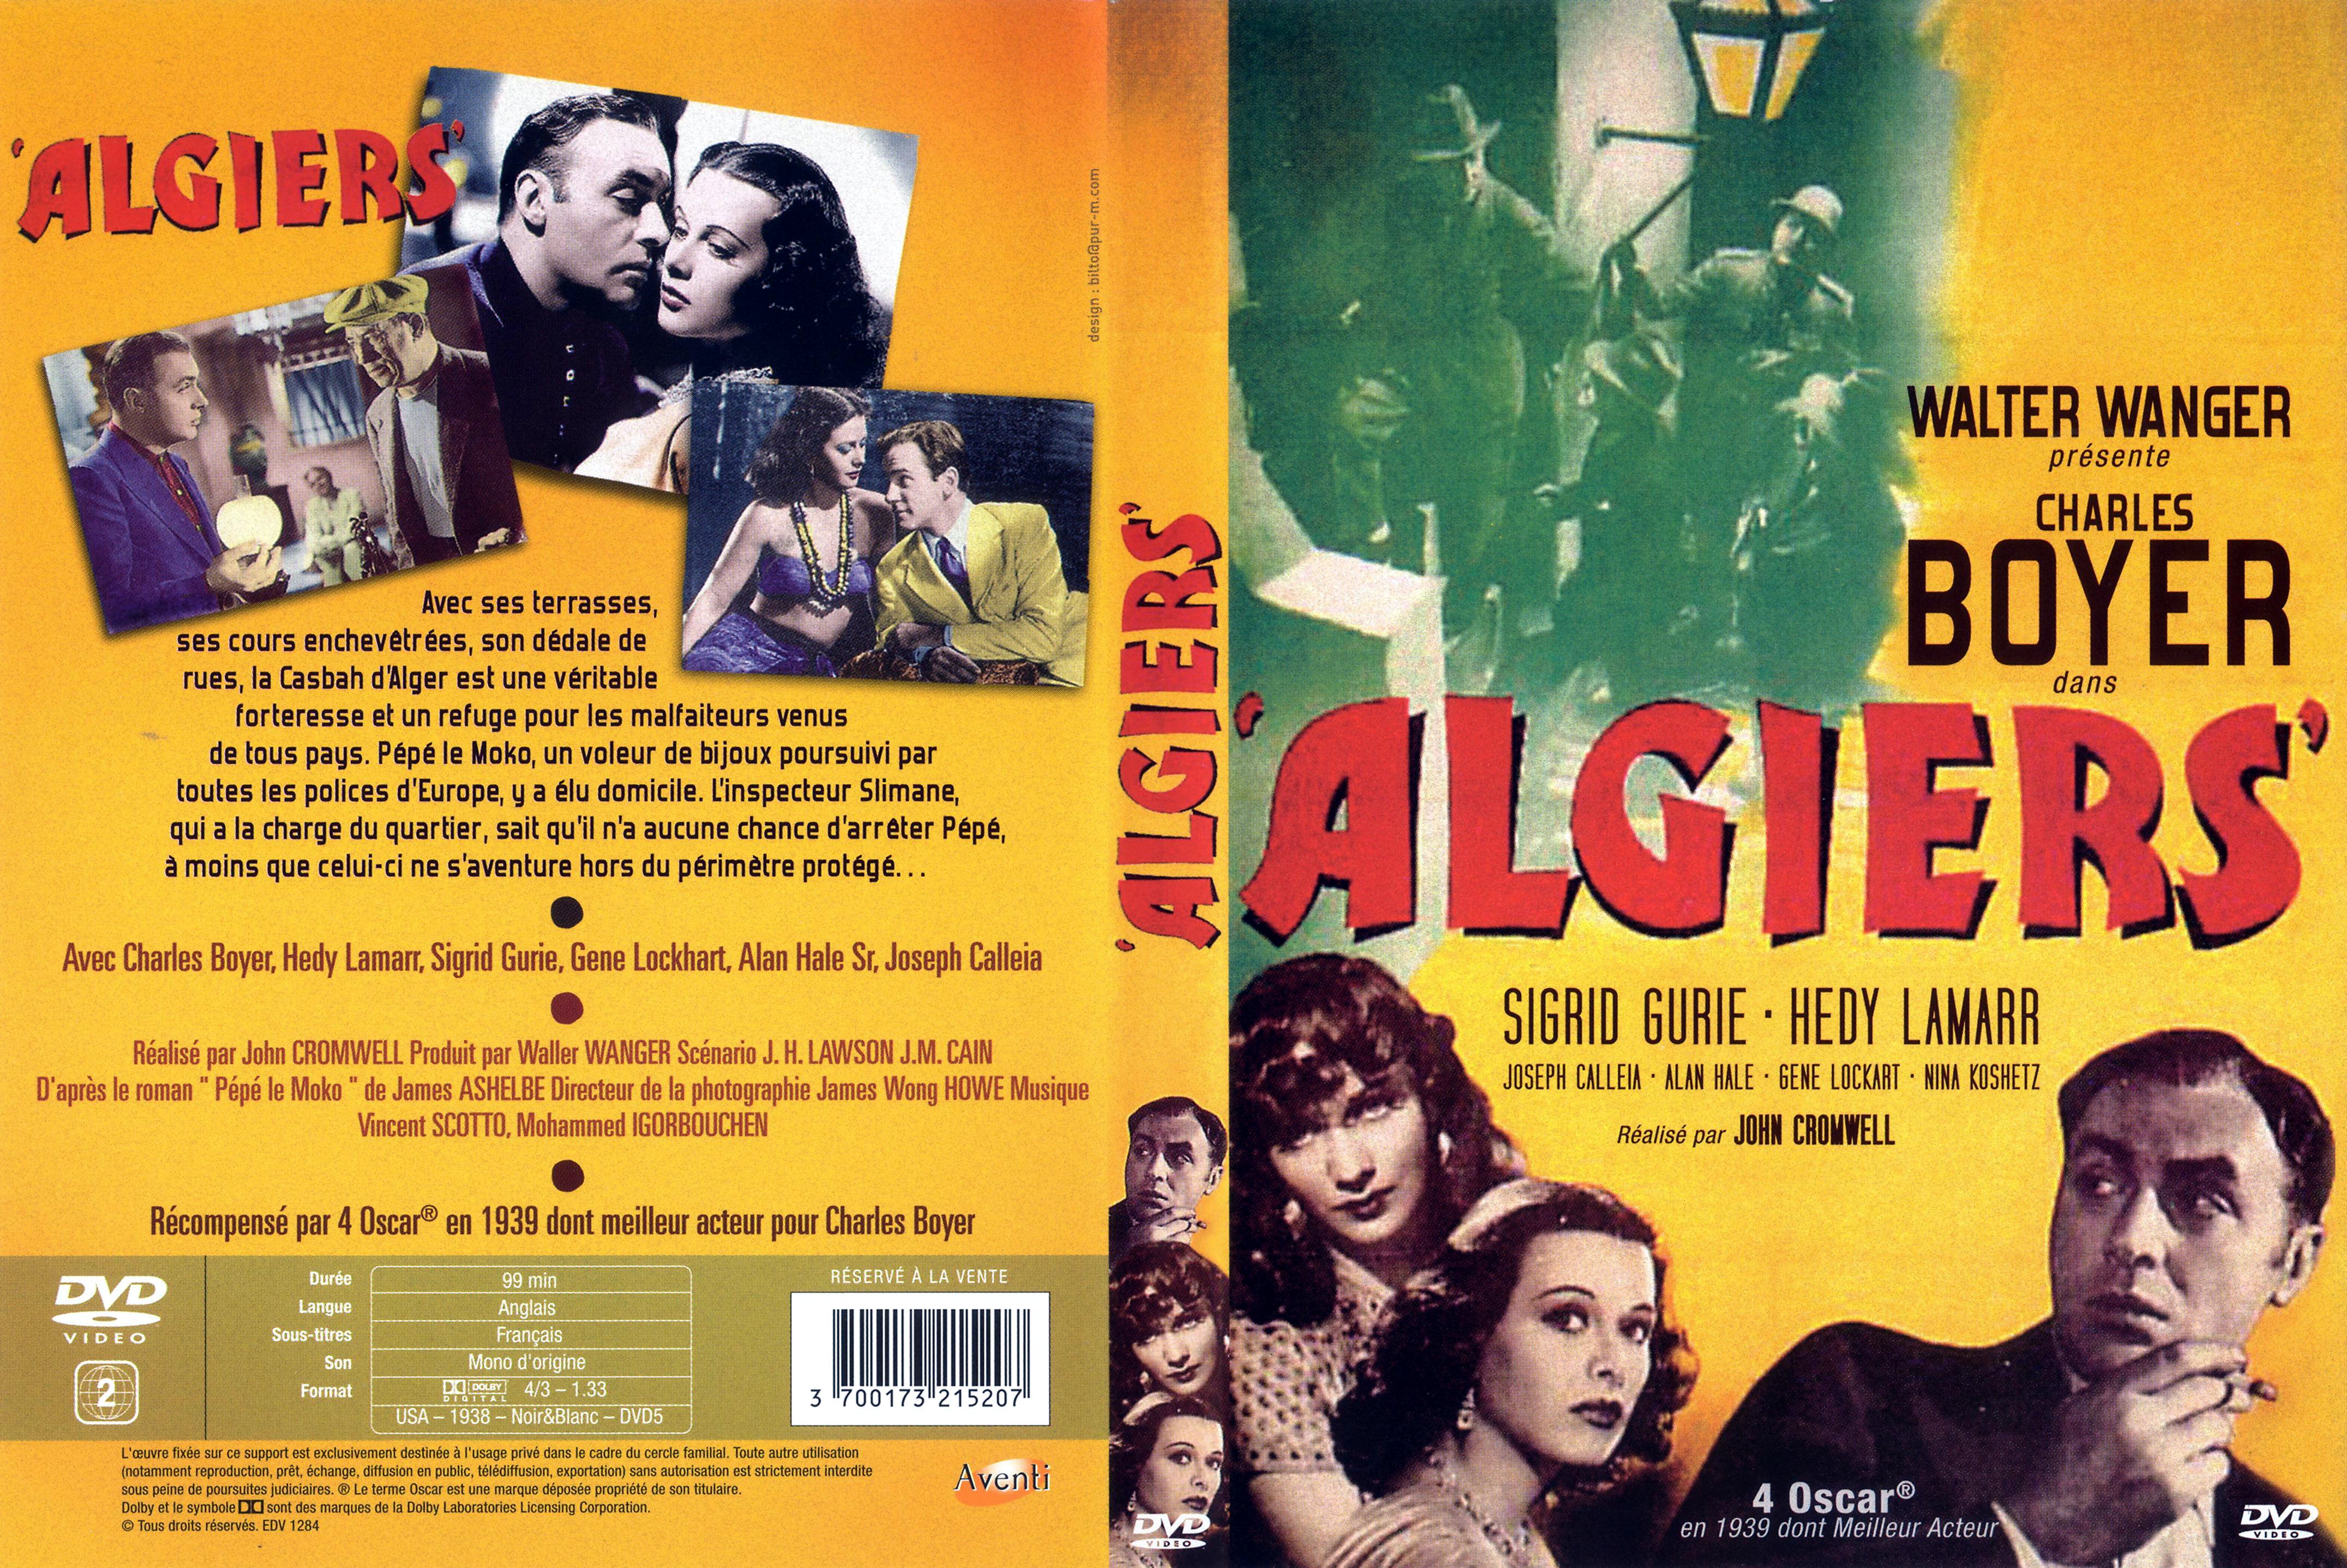 Jaquette DVD Algiers